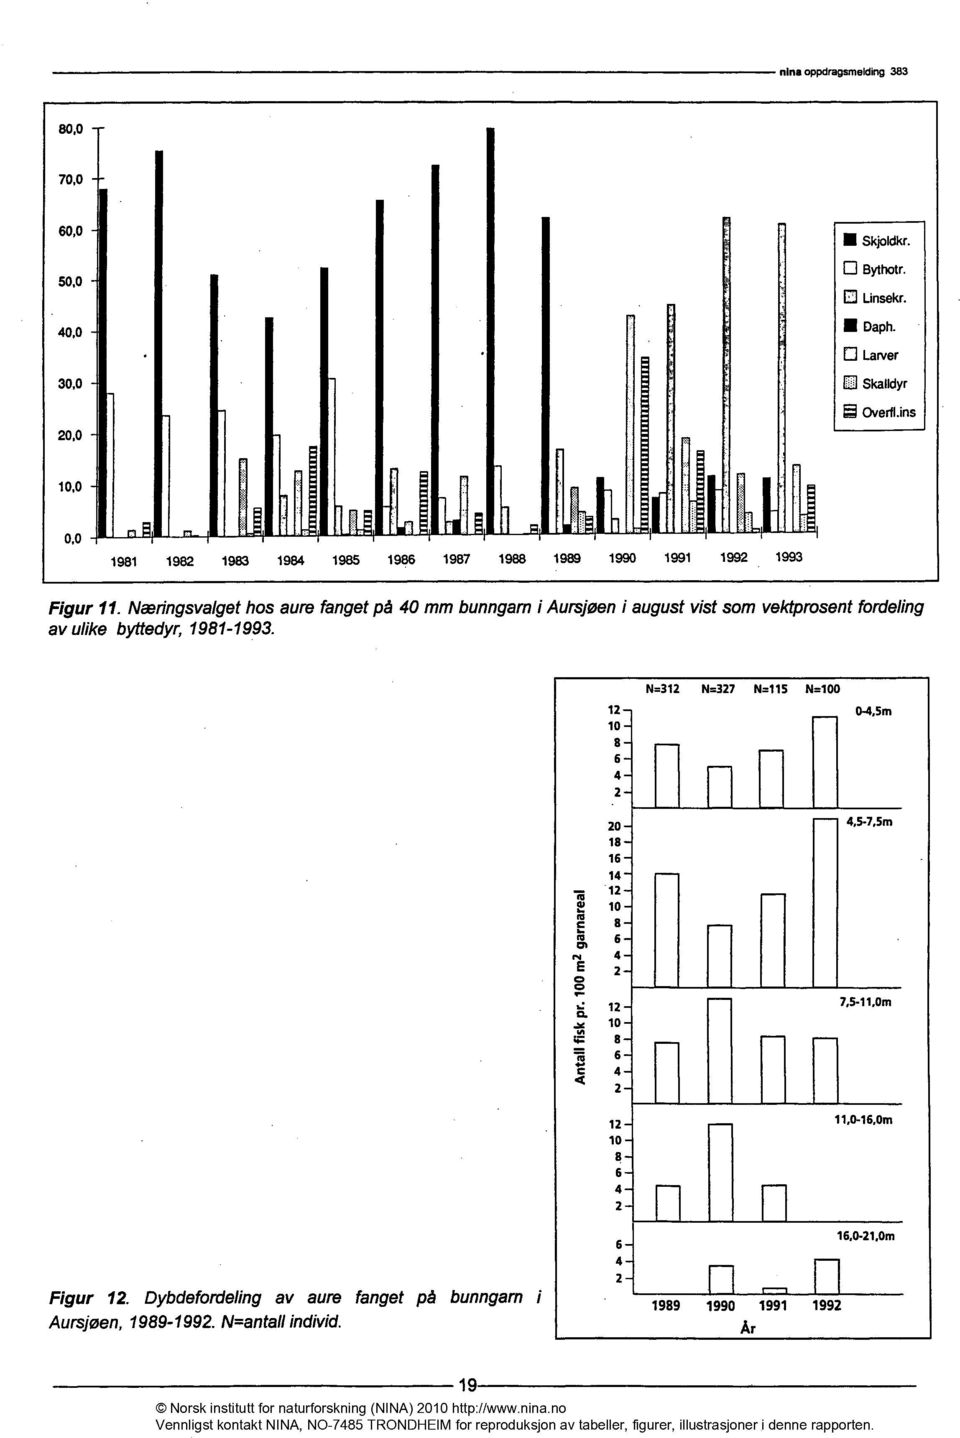 Næringsvalgethos aure fangetpå mm bunngarni Aursjøeni augustvist som vektprosentfordeling av ulike byttedyr,1981-1993.